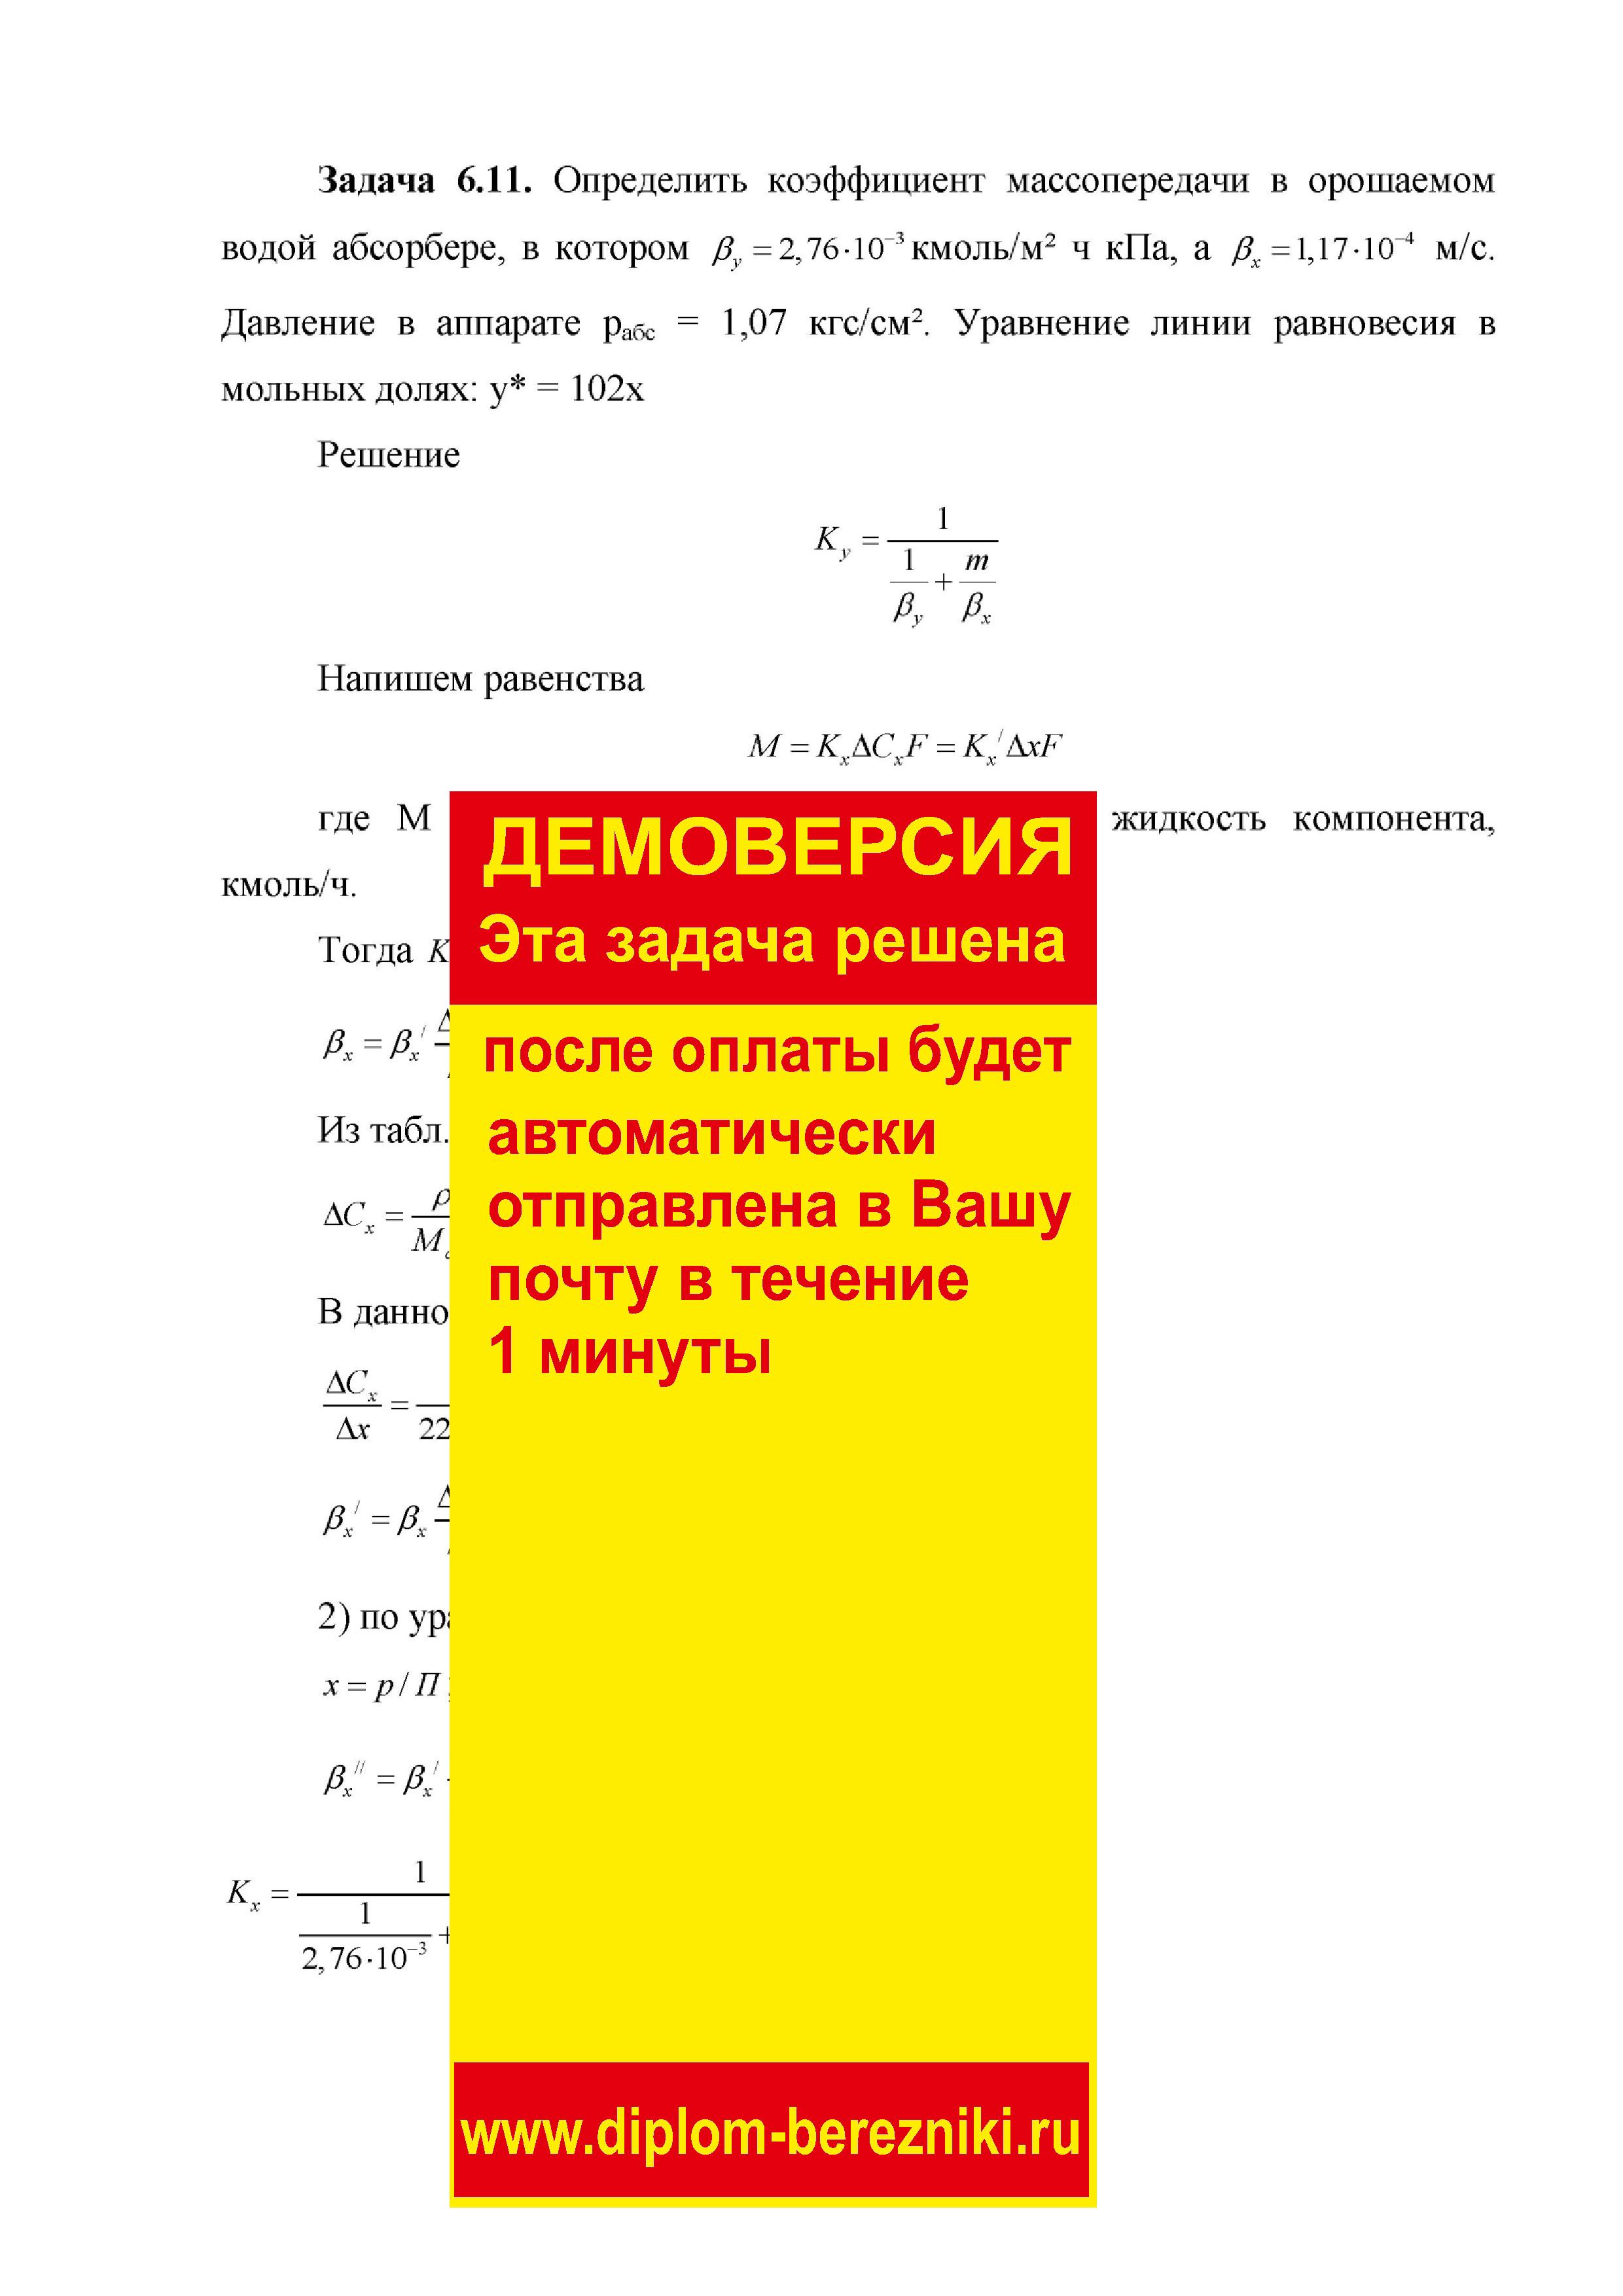 Решение задачи 6.11 по ПАХТ из задачника Павлова Романкова Носкова